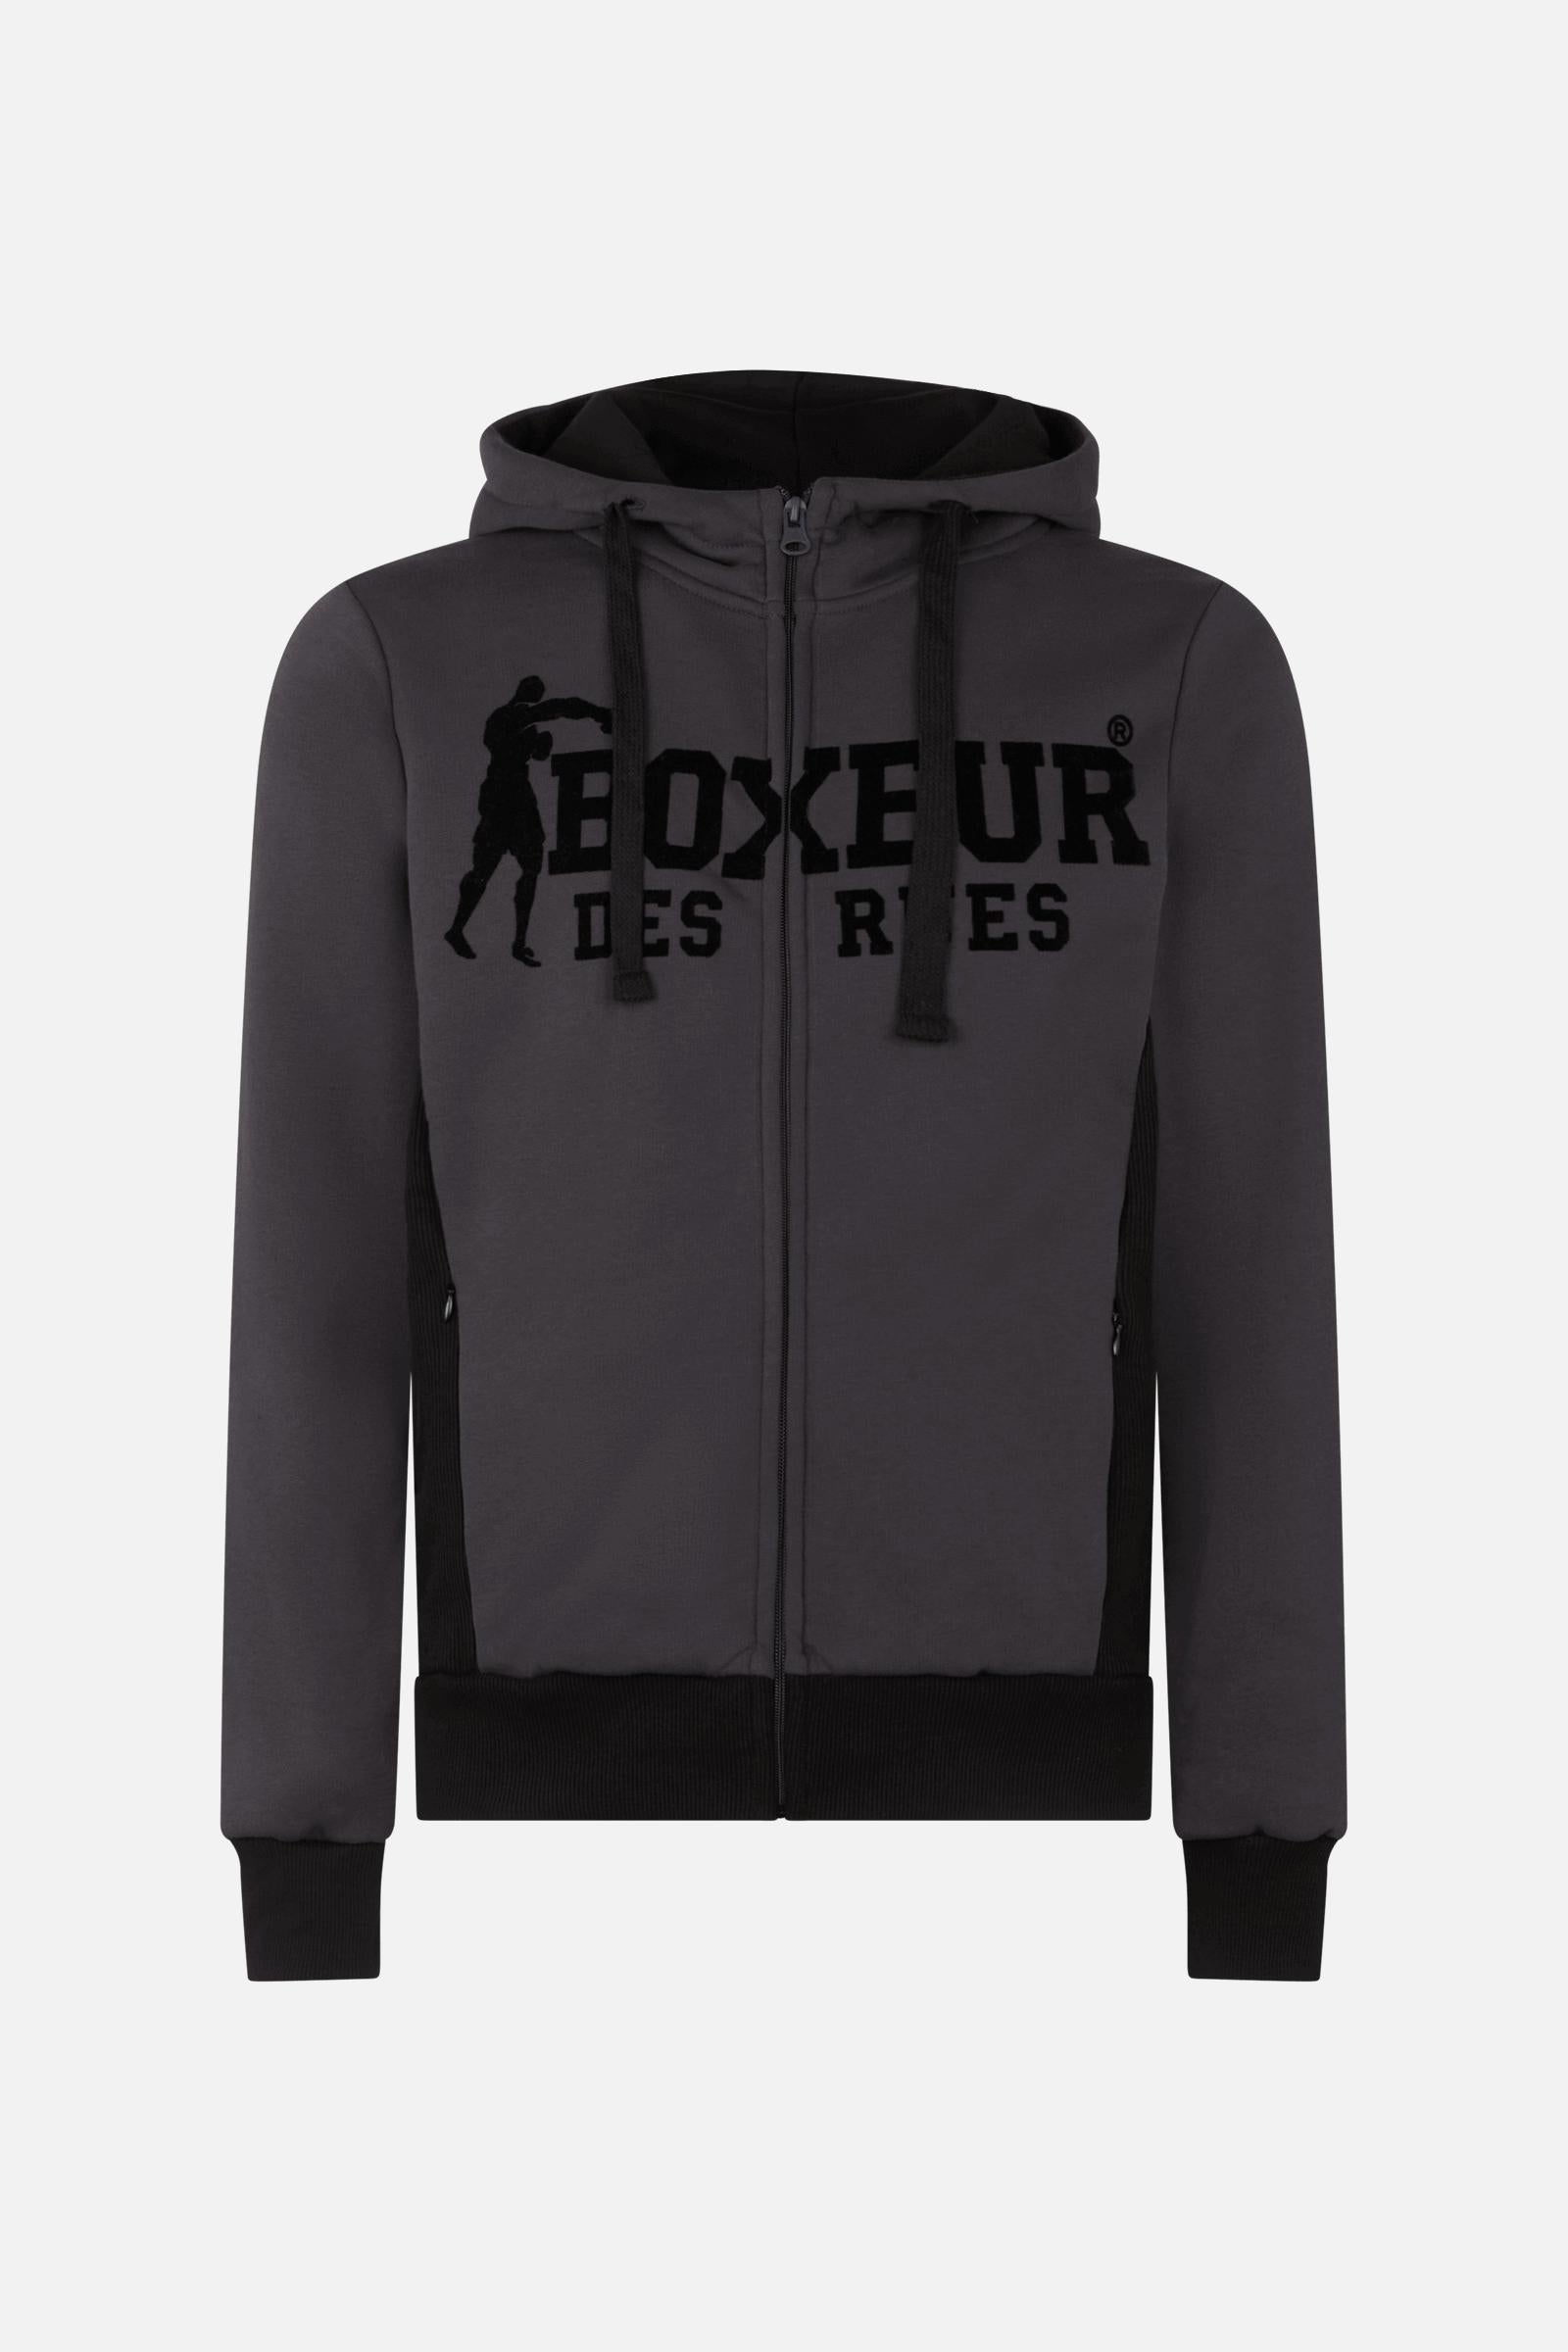 Hooded Full Zip Sweatshirt in Anthracite Sweatjacken Boxeur des Rues   